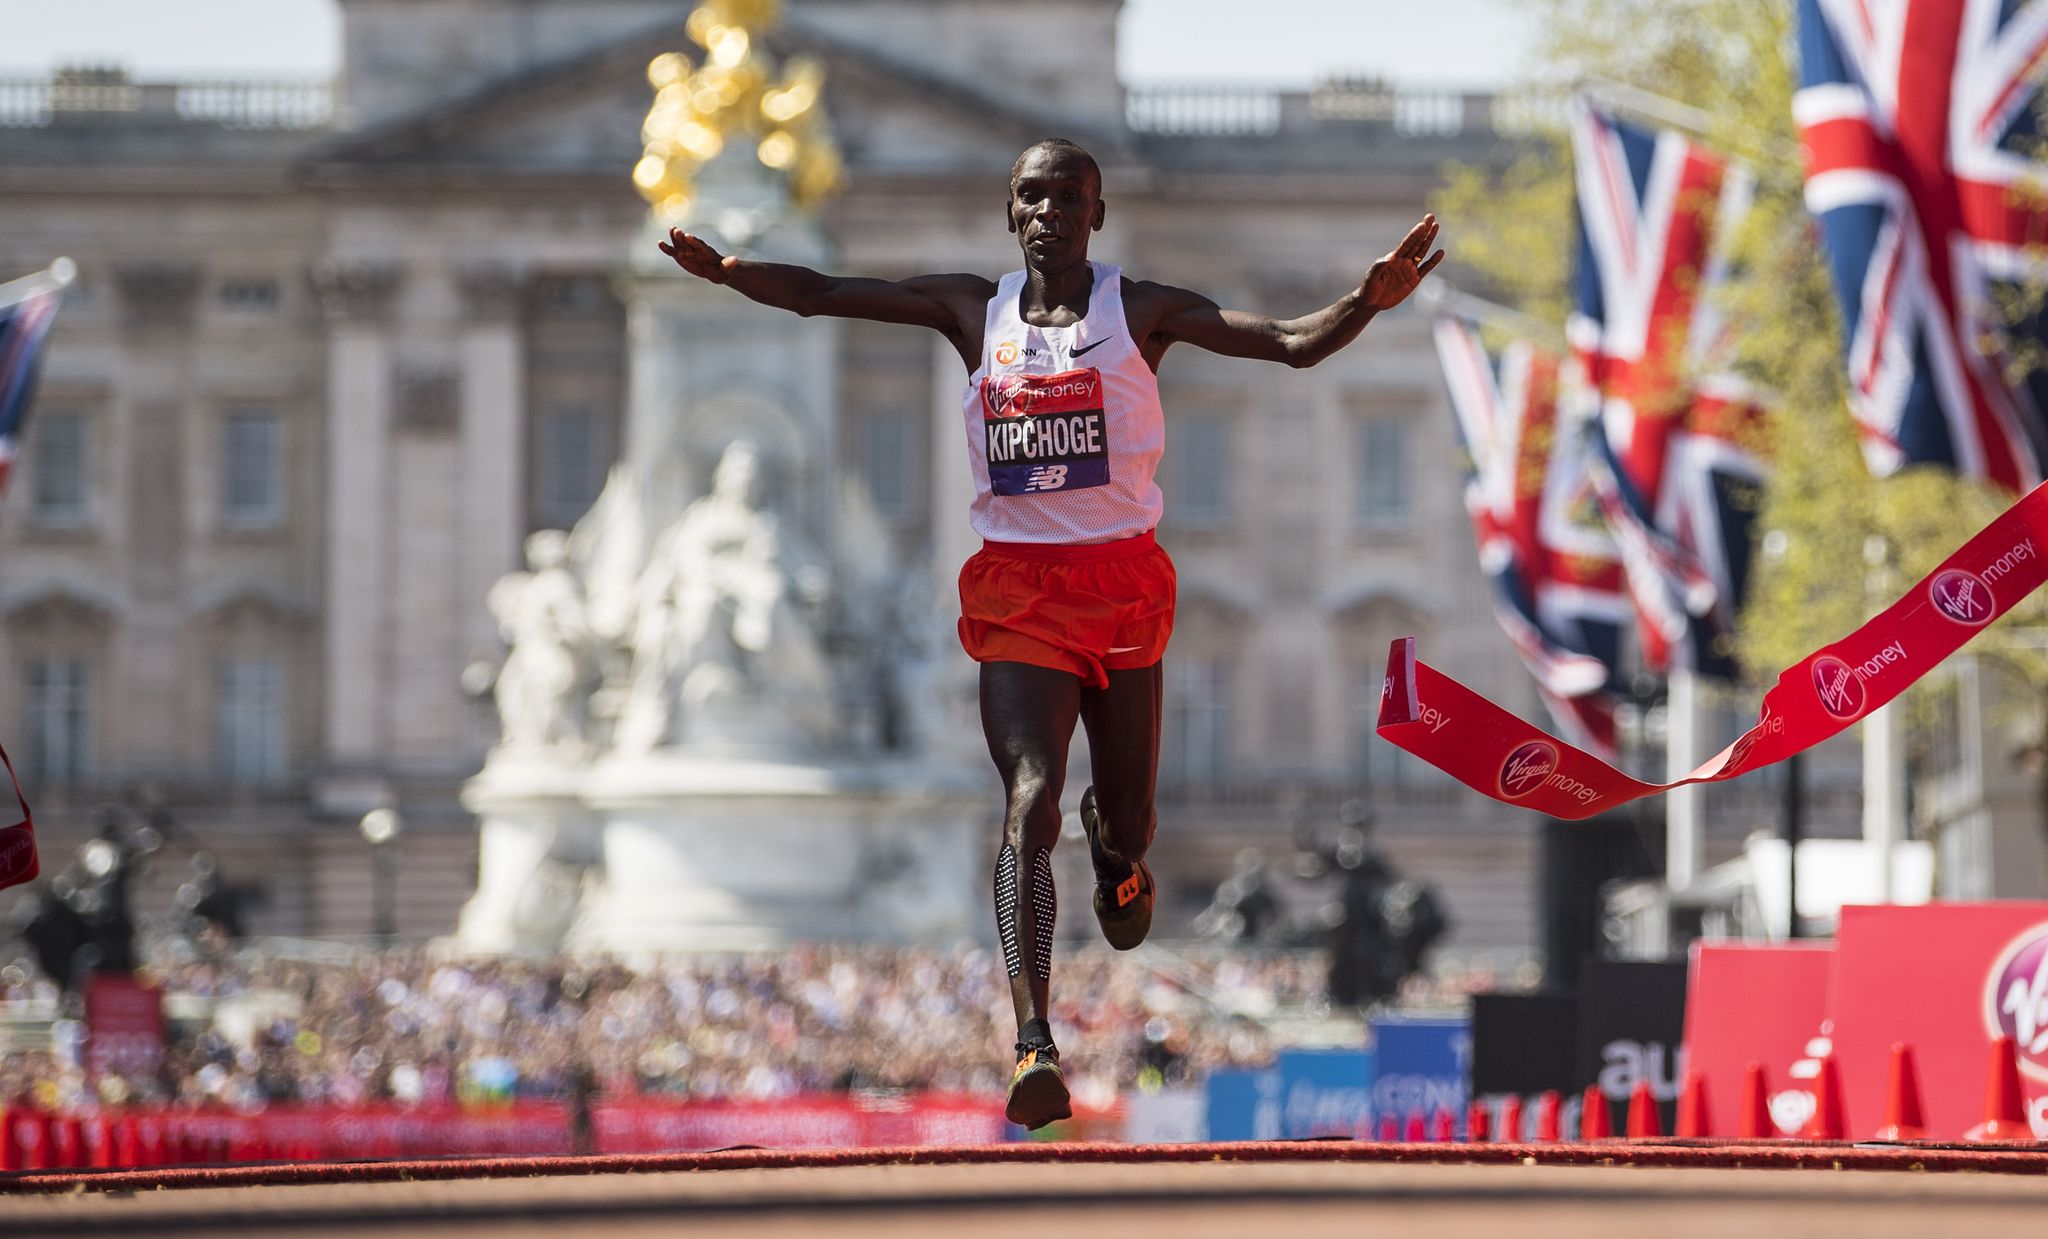 Kipchoge to run London Marathon 2019